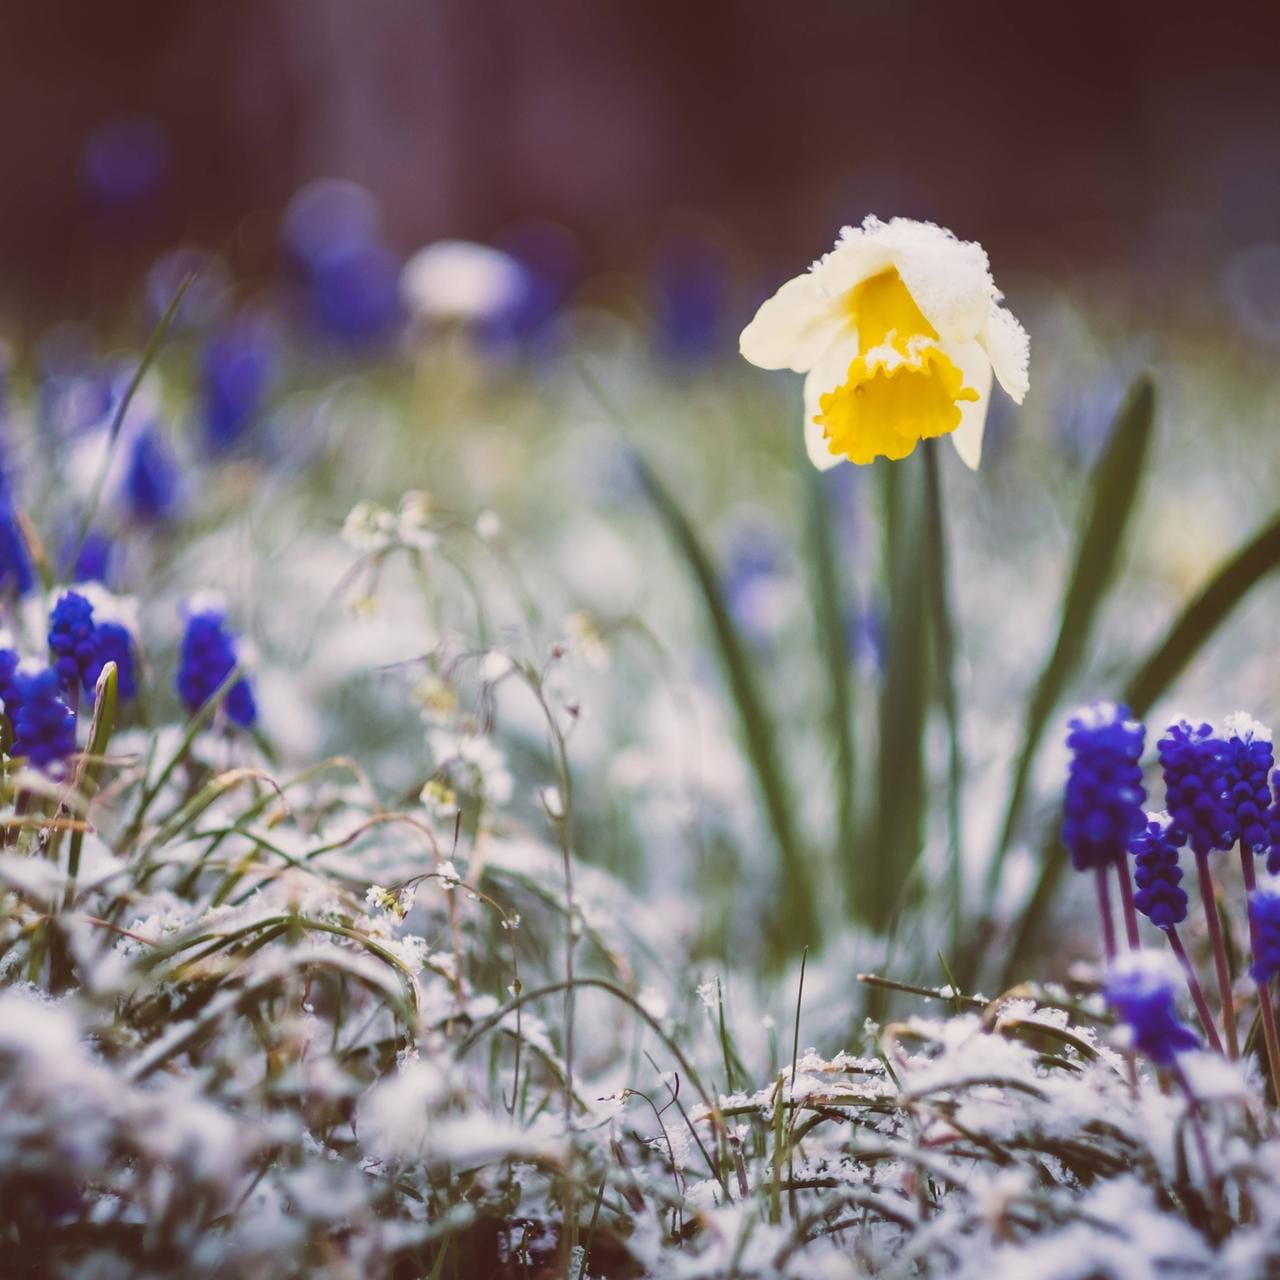 Der Winter holt den Frühling ein: In den kommenden Tagen sind Bodenfrost und Schneeschauer möglich.